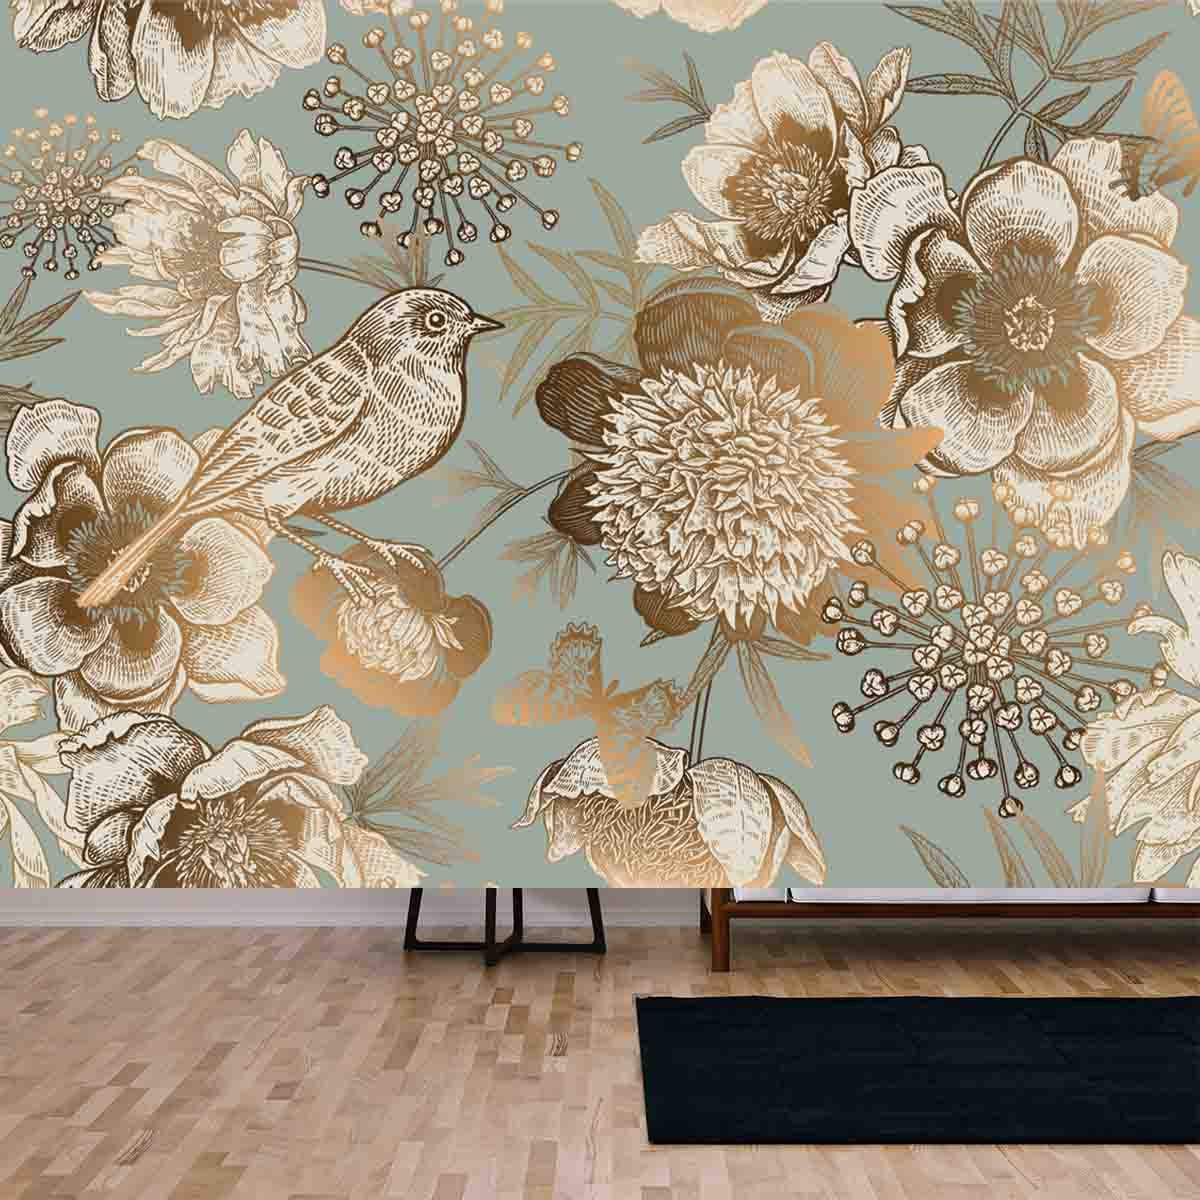 Garden Flower Peonies, Bird and Butterflies Gold Foil on a Blue Background Wallpaper Living Room Mural